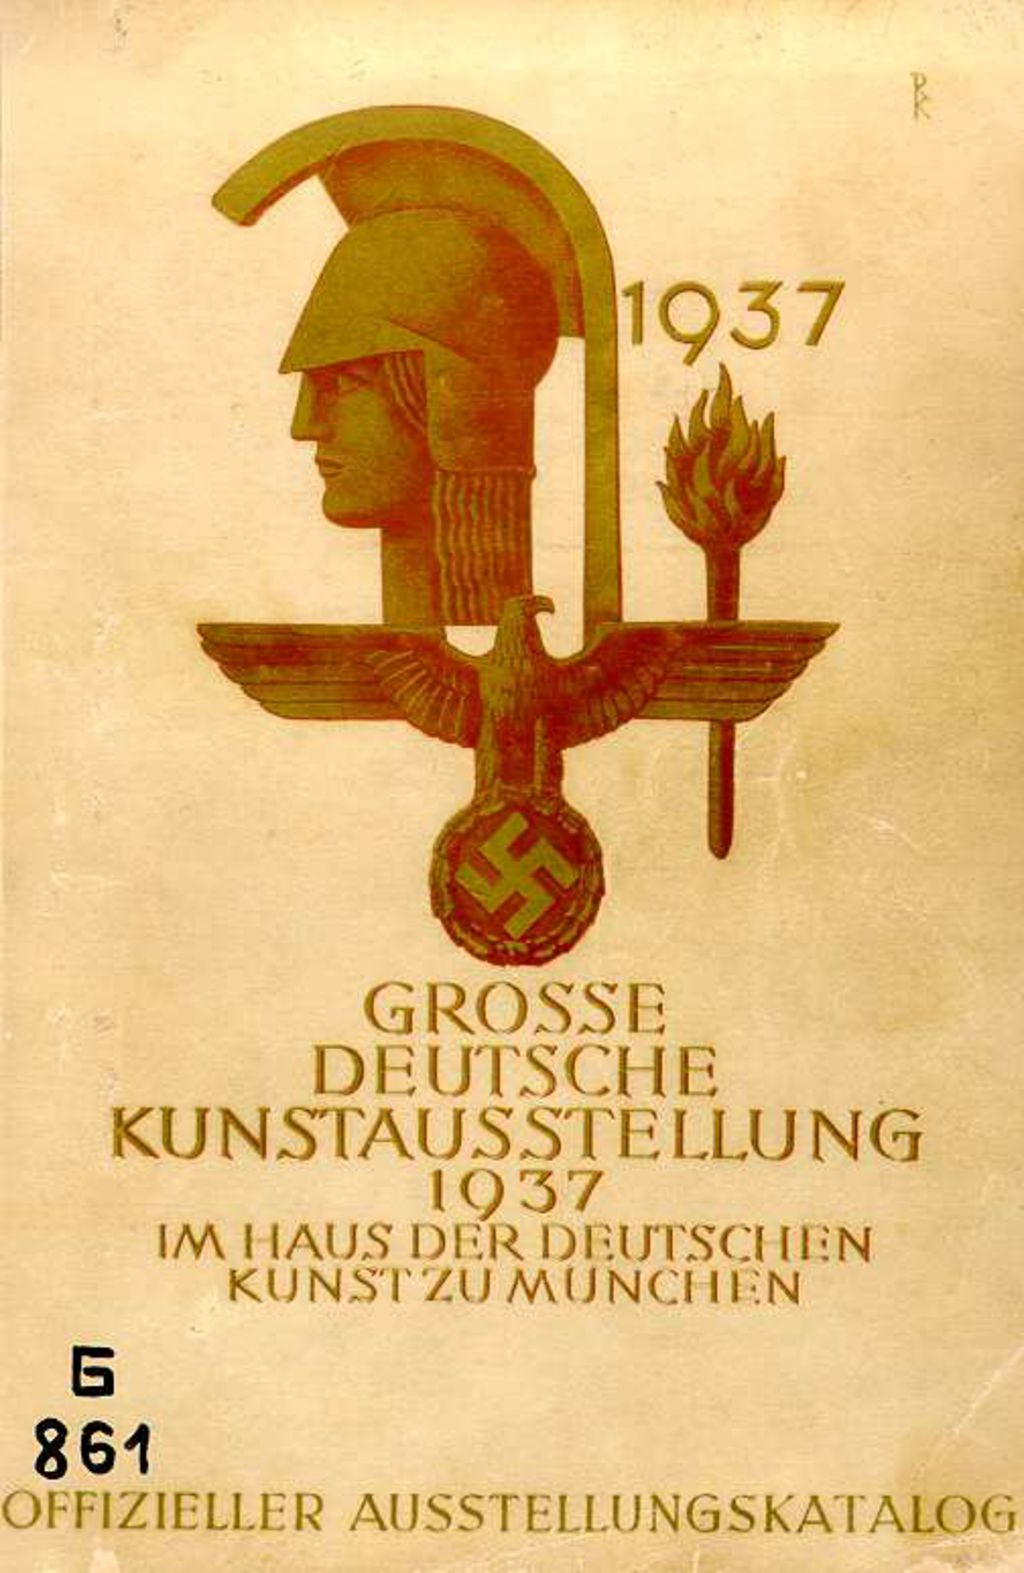 Exponat: Broschüre: "Große Deutsche Kunstausstellung", 1937